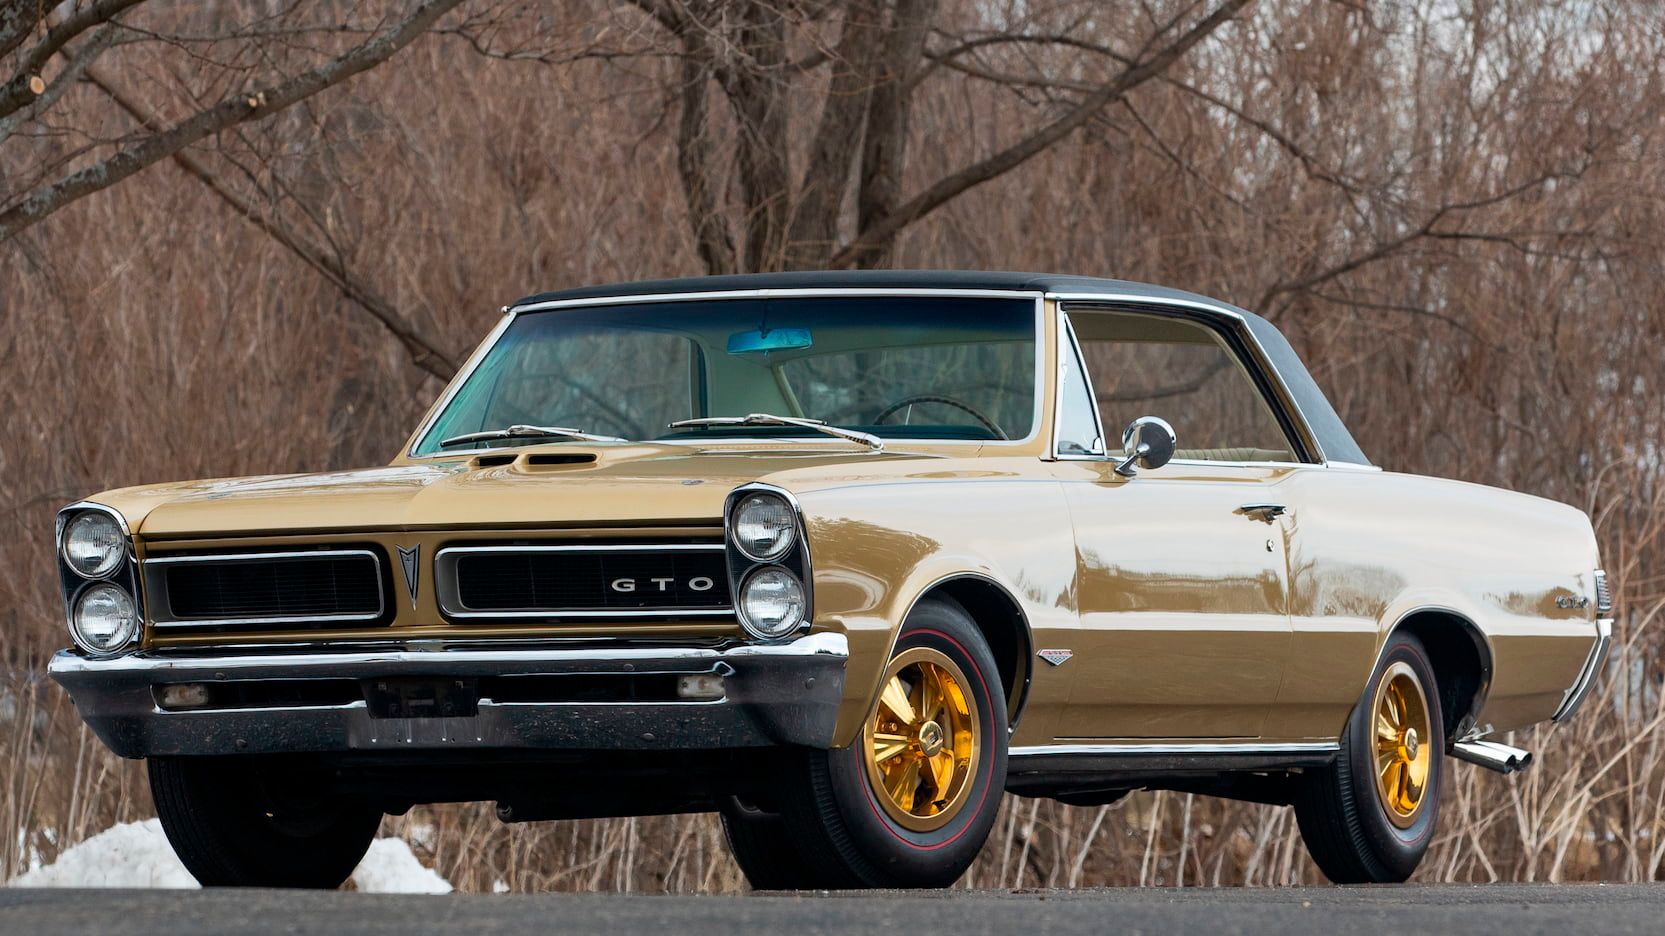 <img src="1965-pontiac-gto.jpg" alt="The 1965 Hurst Pontiac GeeTO contest car">